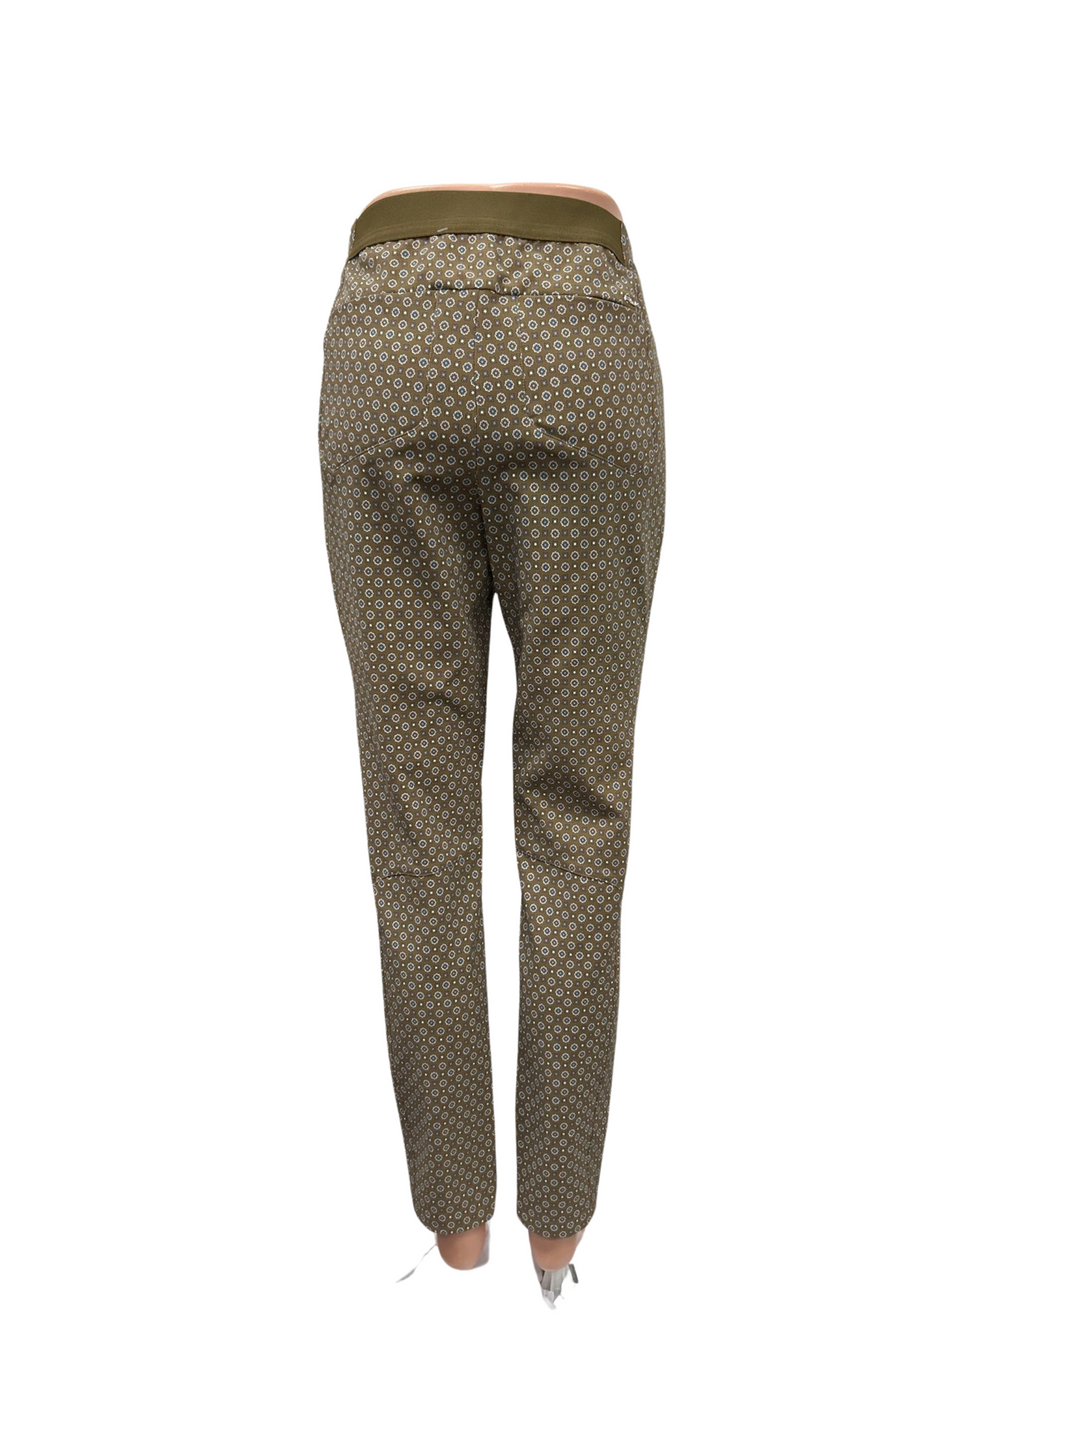 RLX Ralph Lauren Stretch Athletic Pant - Tile Petal - Size 4 - Skorzie